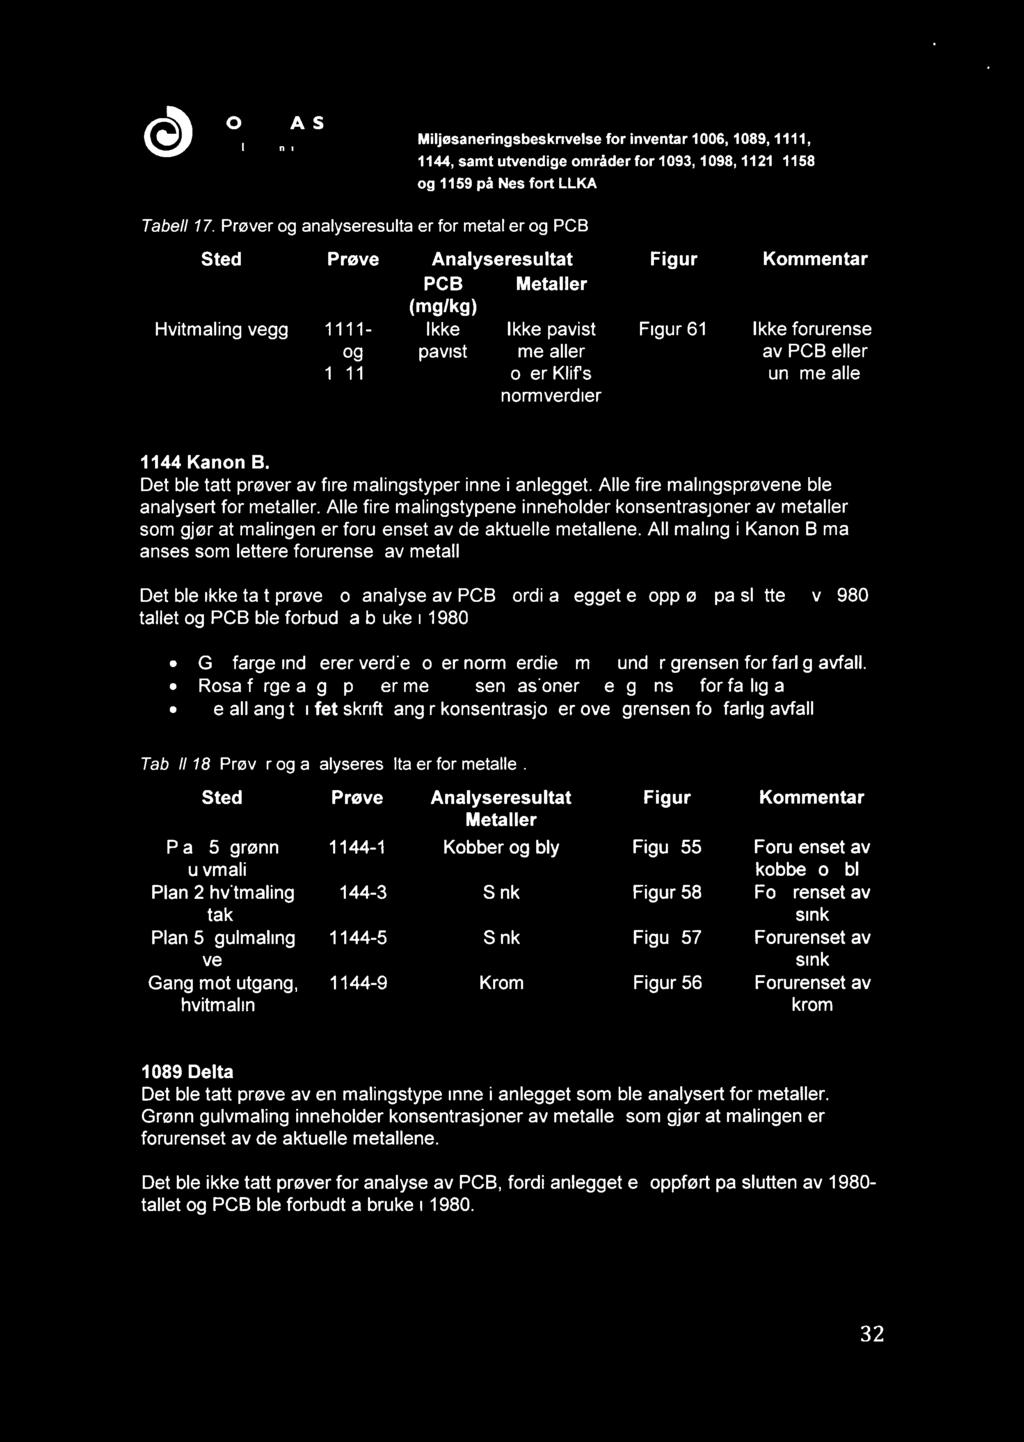 @)NORSAS Norsk kornpetansesenter Miljeisaneringsbeskrivelse for inventar 1006, 1089, 1111, o 1159 å Nes fort LLKA Tabell 17: Prøver og analyseresultater for metaller og PCB.